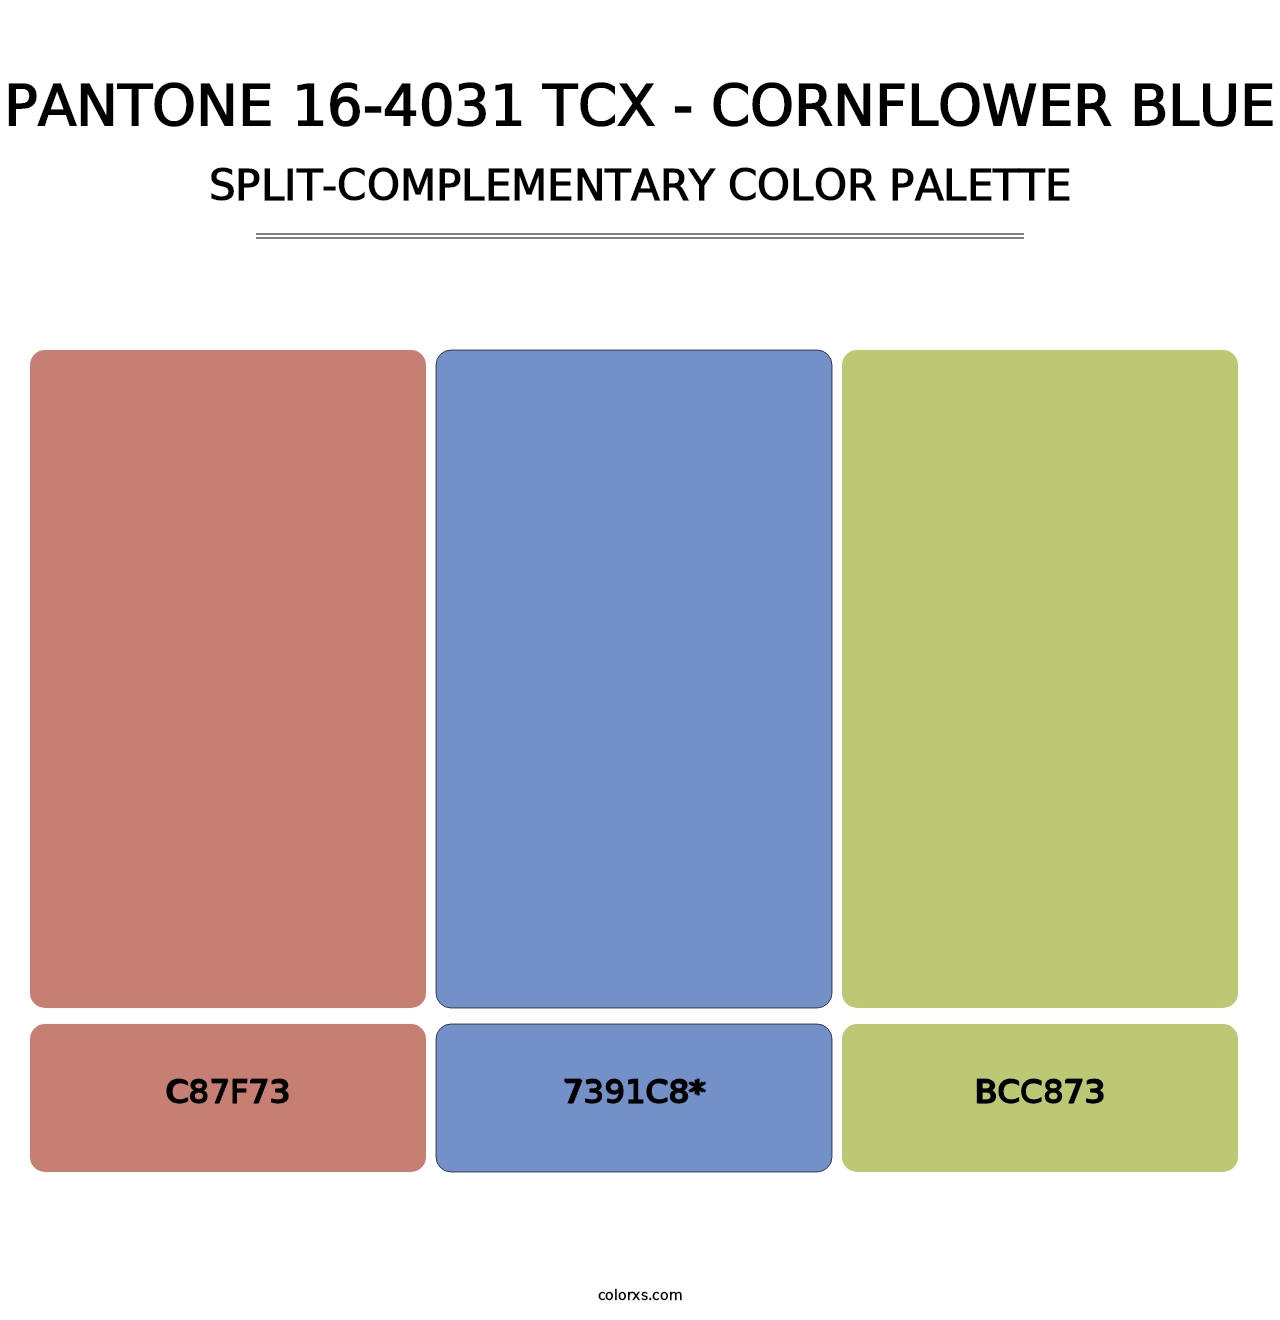 PANTONE 16-4031 TCX - Cornflower Blue - Split-Complementary Color Palette